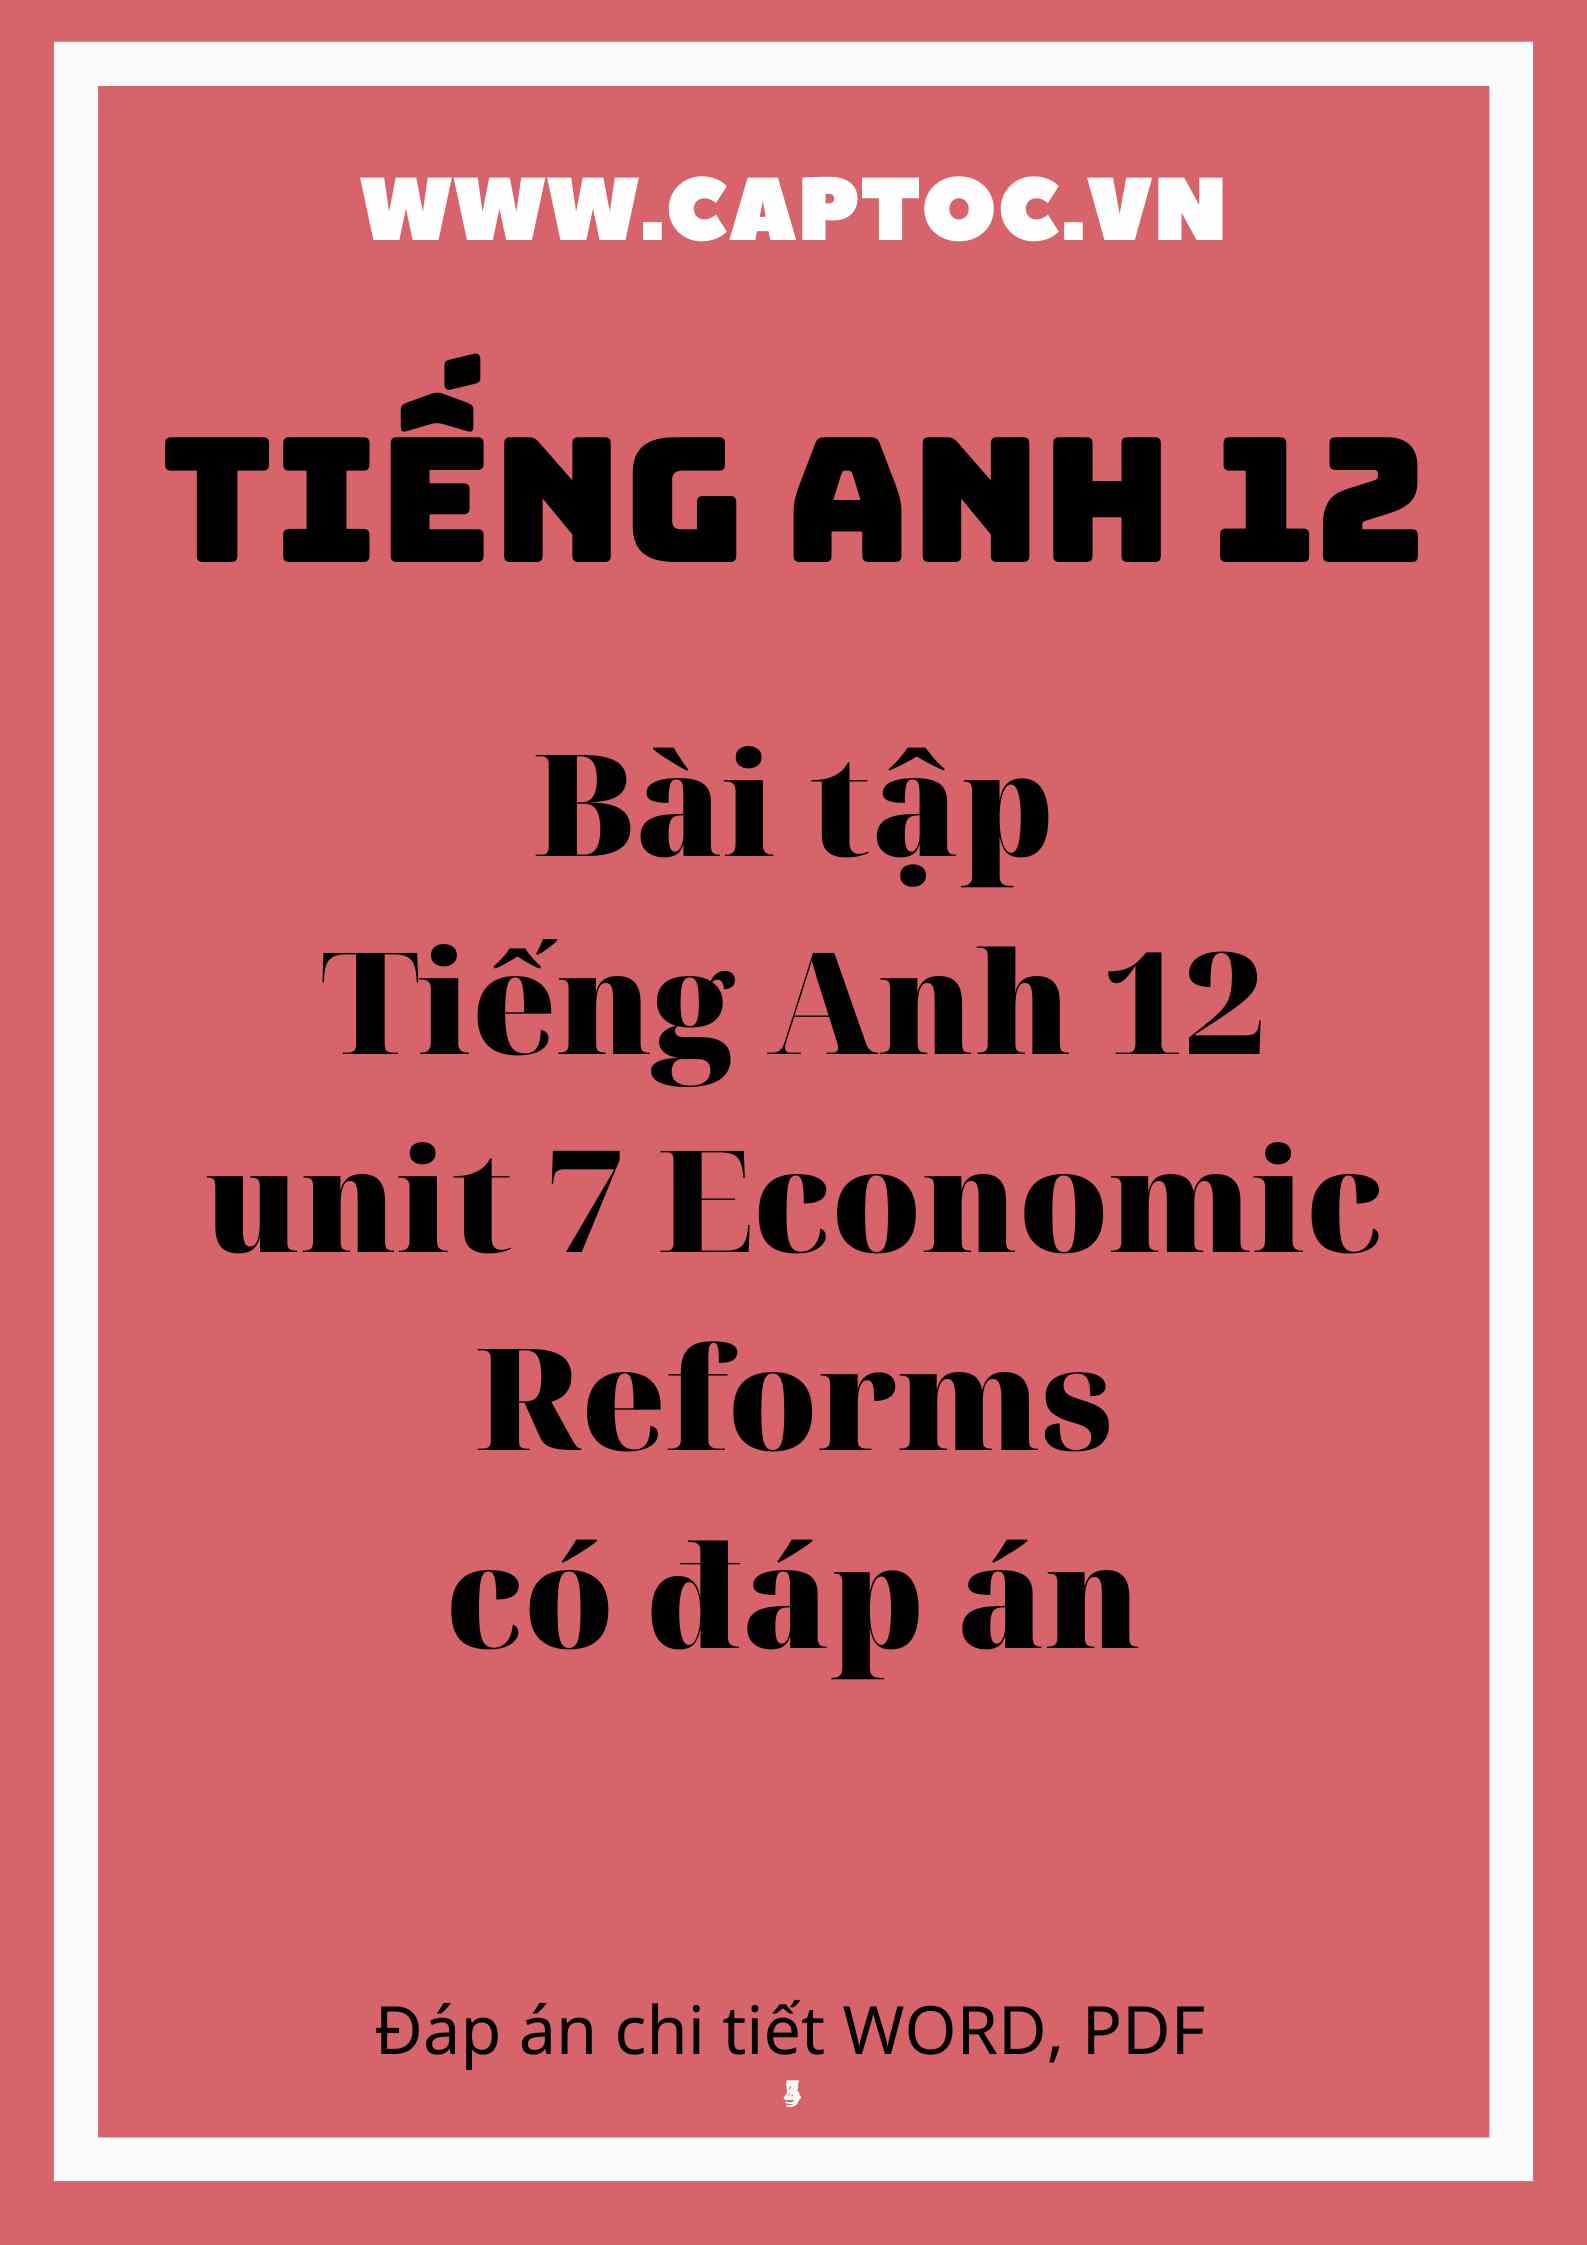 Bài tập Tiếng Anh 12 unit 7 Economic Reforms có đáp án